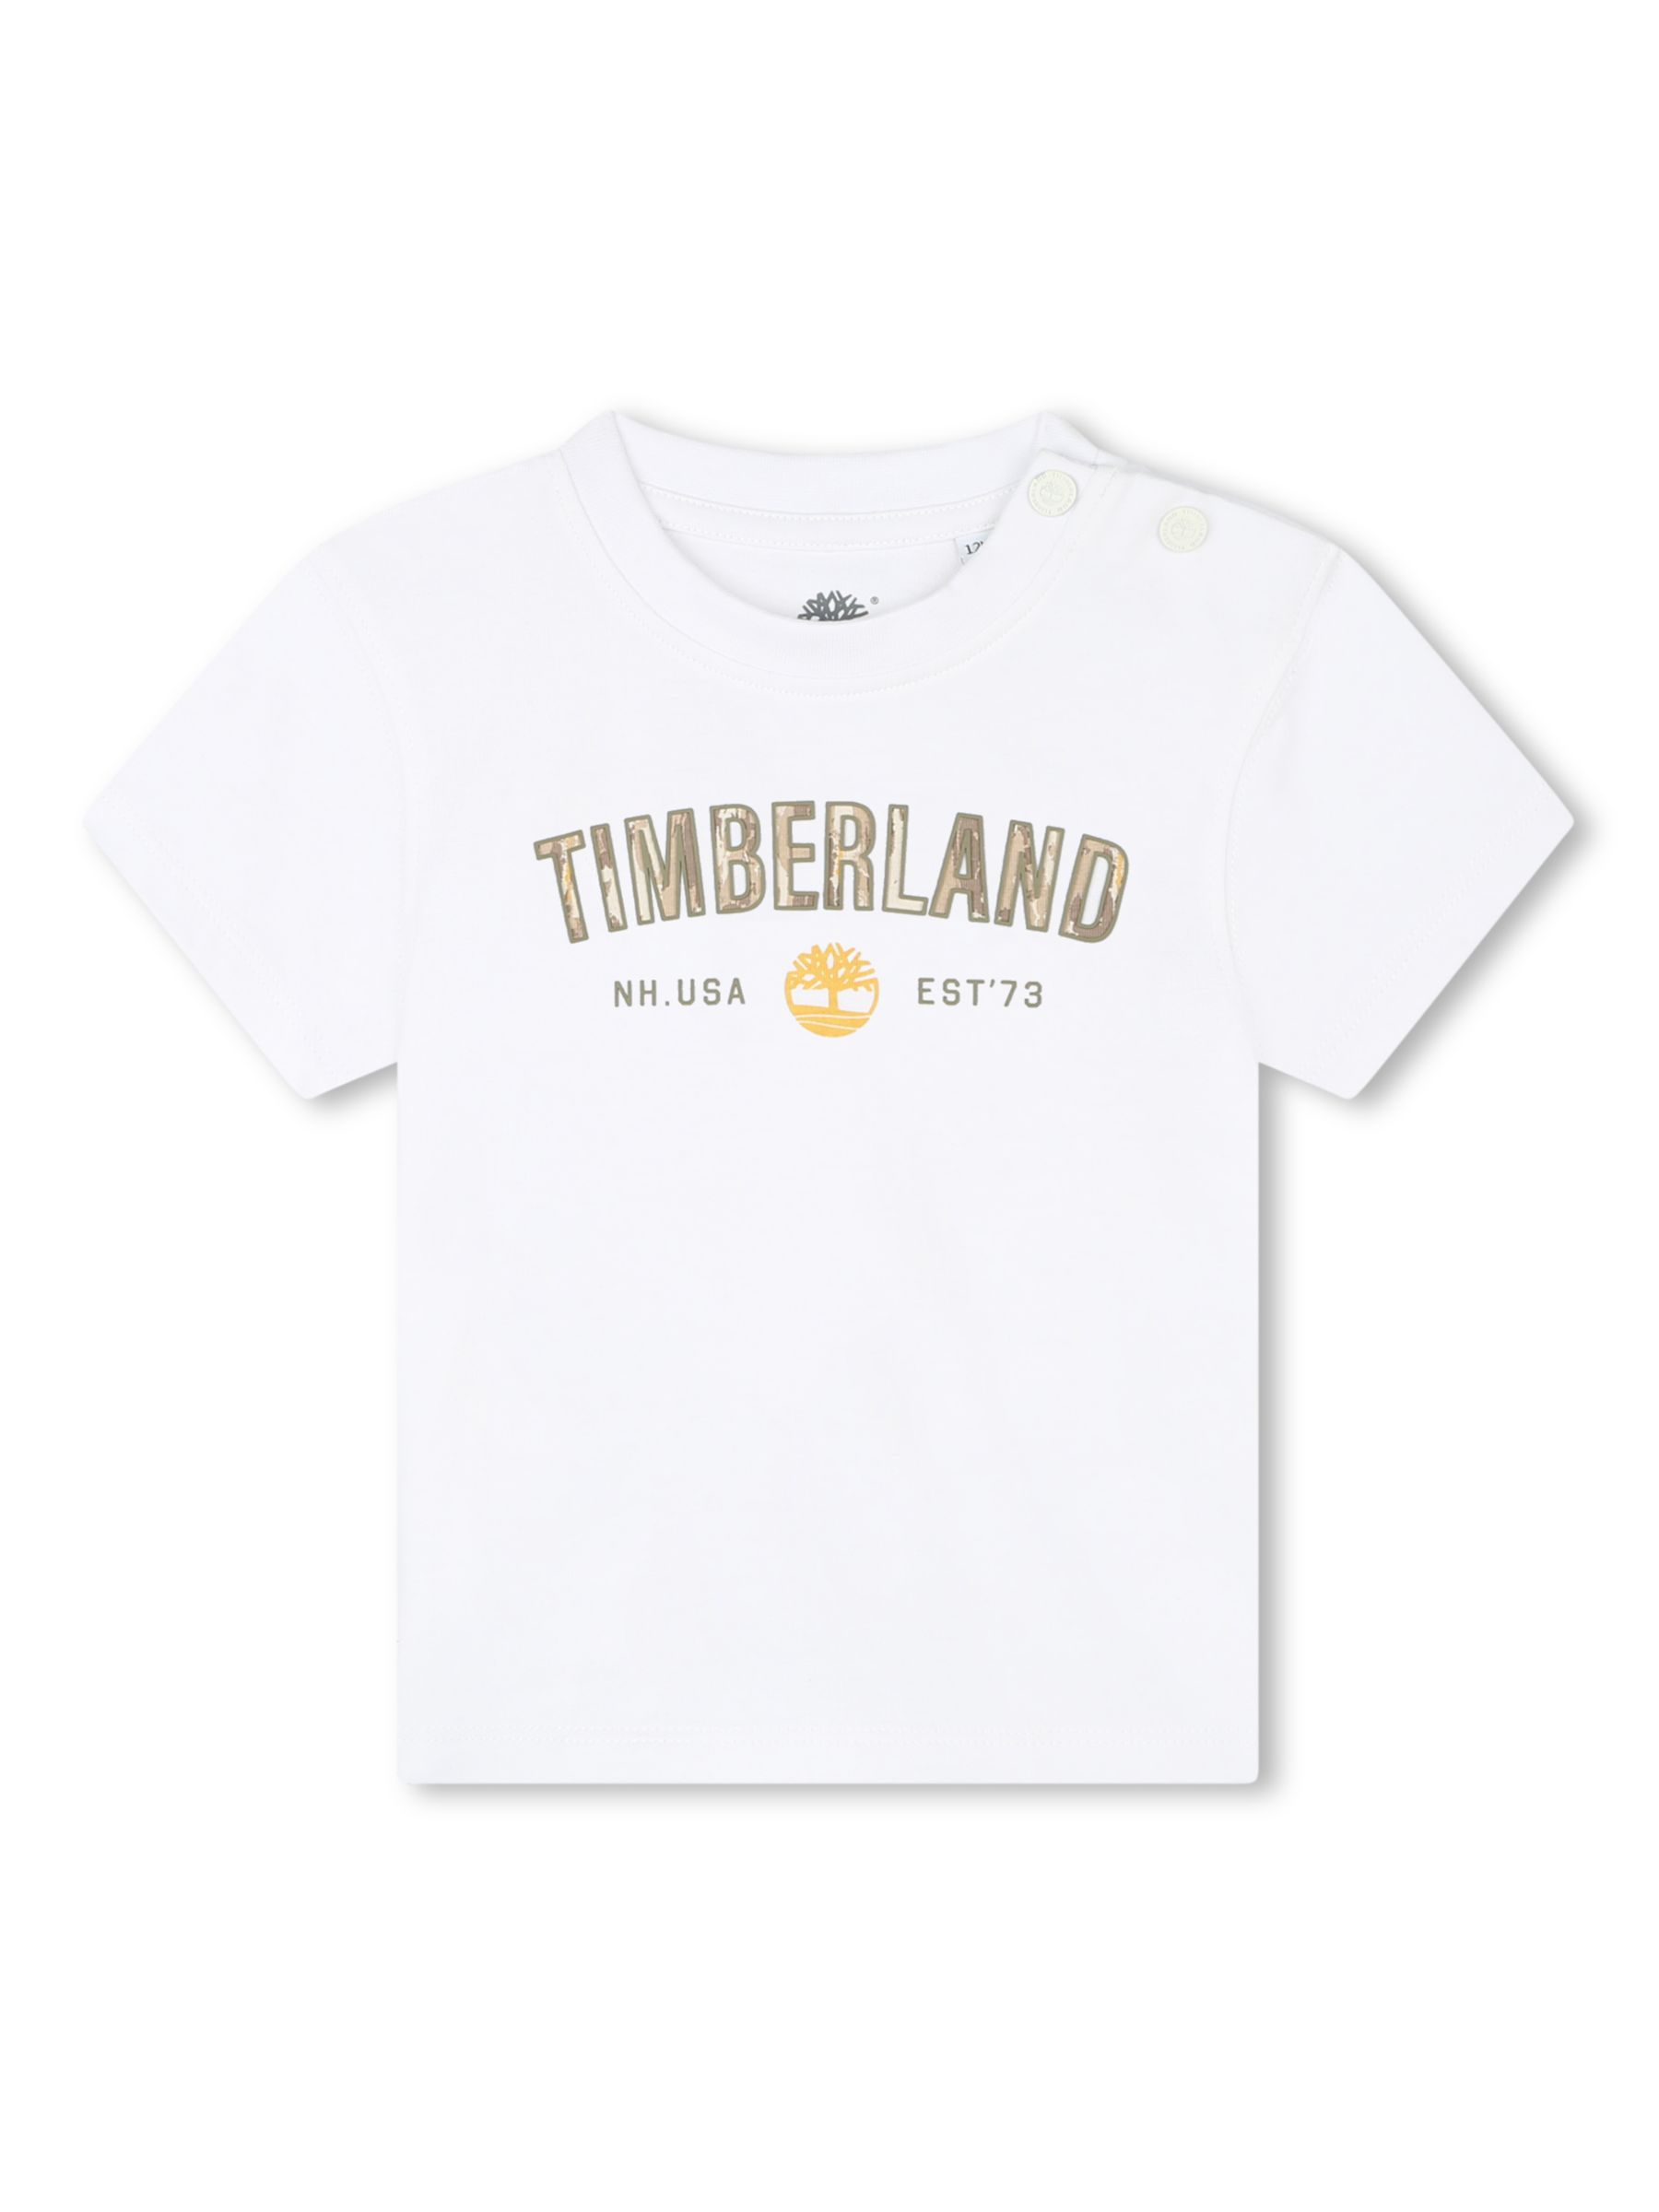 Timberland Baby Logo T-Shirt & Shorts Set, White/Yellow, 2 years